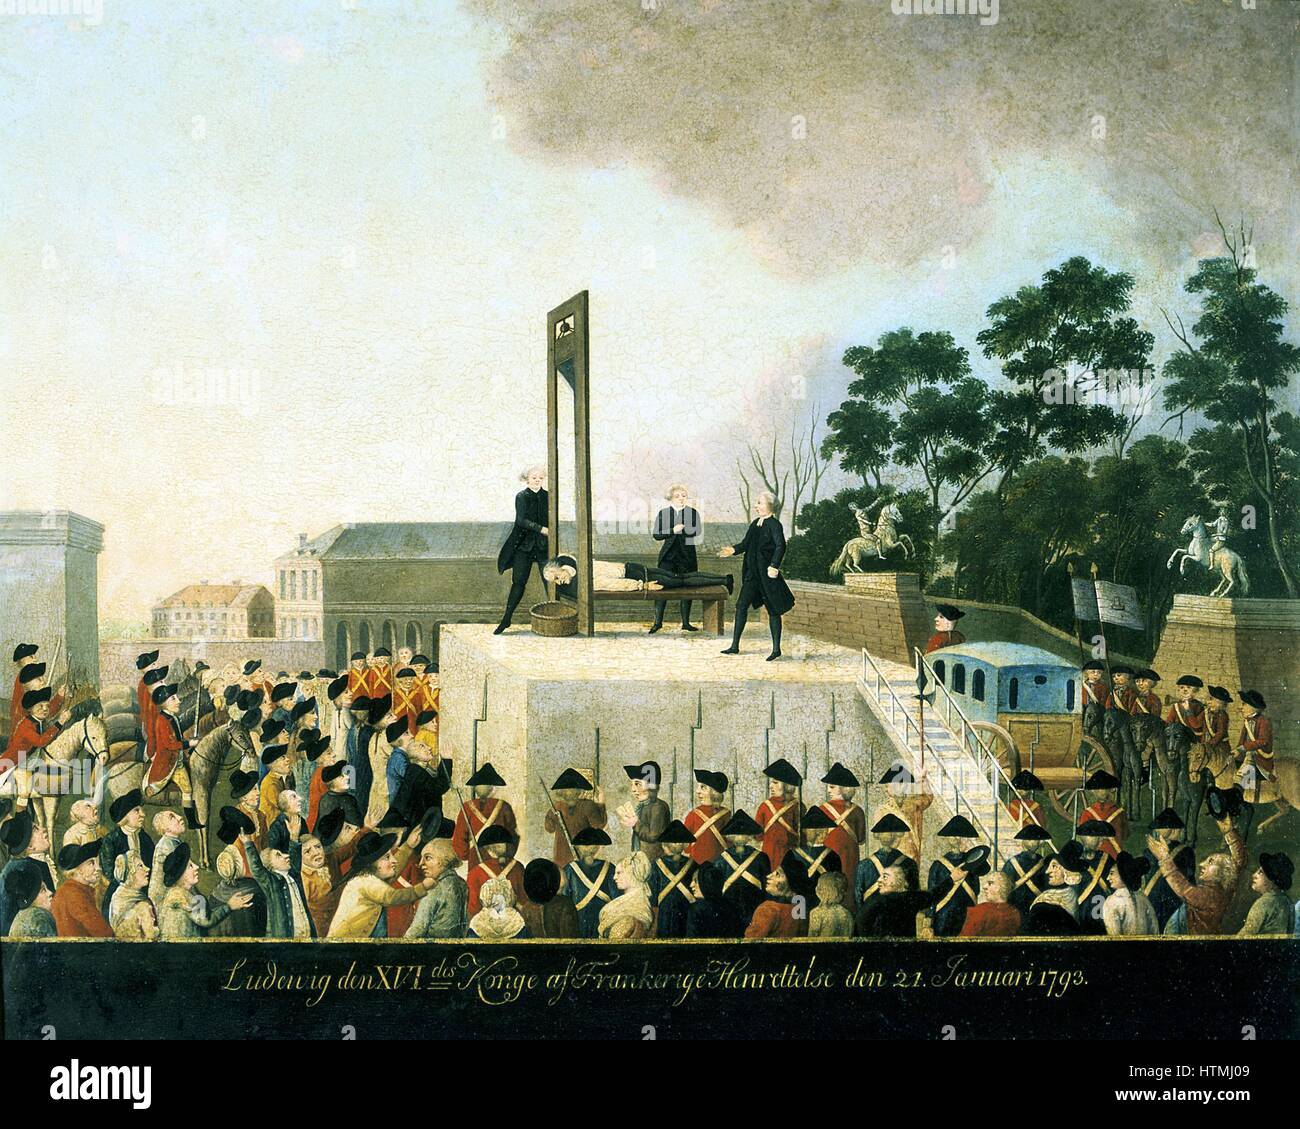 Hinrichtung durch die Guillotine von Louis XVI von Frankreich, 21. Januar 1793. Louis liegend gebunden Guillotine warten Klinge zu fallen und ihn zu enthaupten. Korb bereit, seinen Kopf zu empfangen. Öl auf Kupfer. Carnavalet, Paris Stockfoto